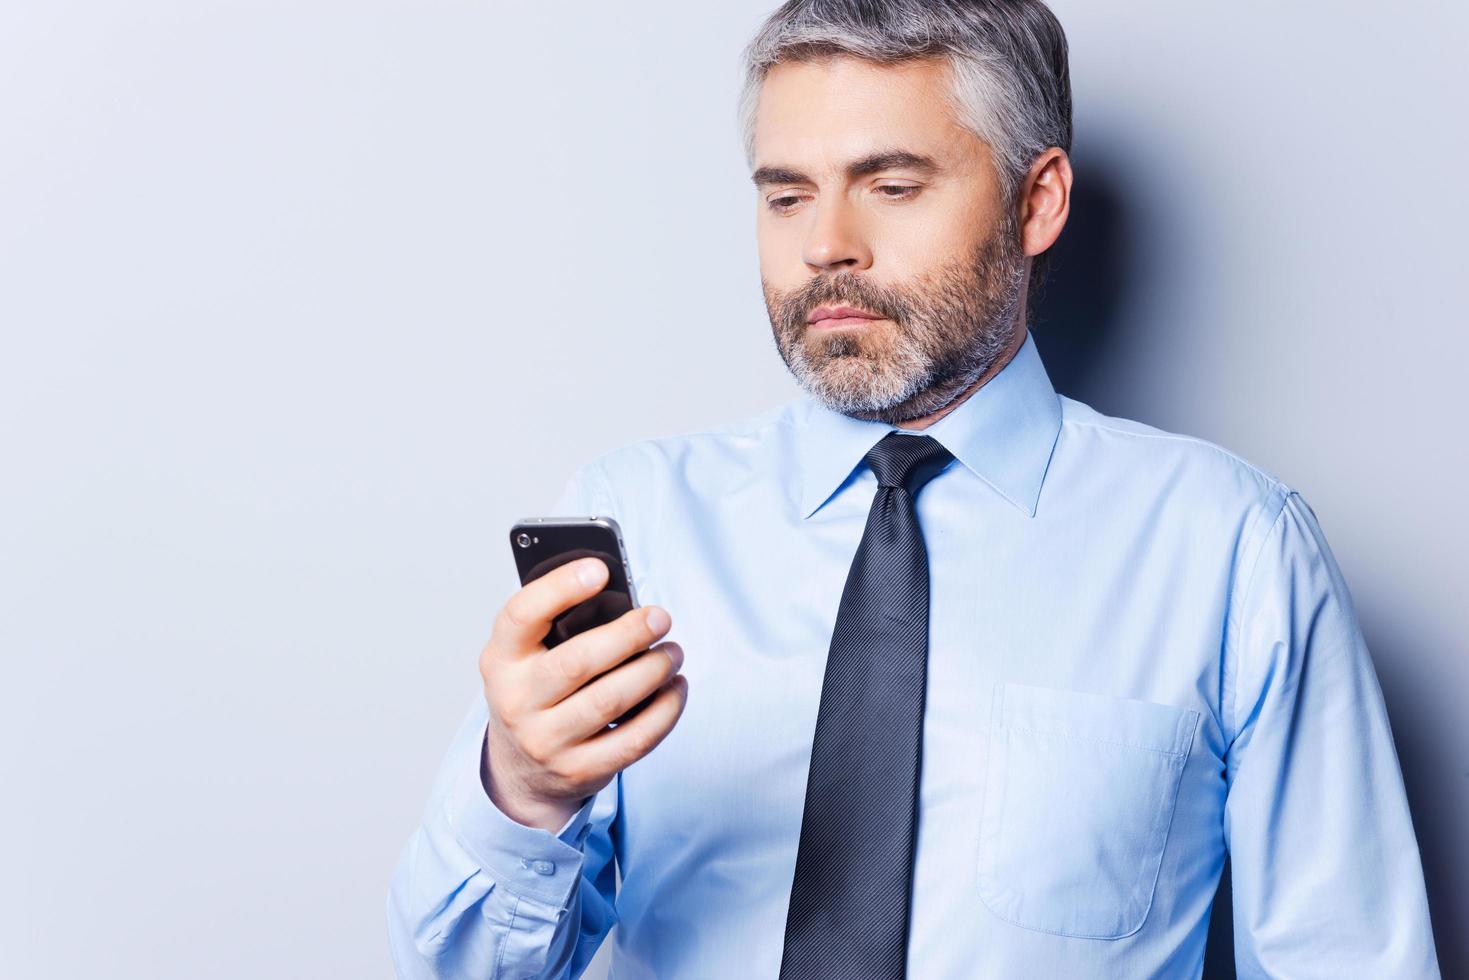 revisando mensajes de negocios. hombre maduro seguro de sí mismo con camisa y corbata sosteniendo un teléfono móvil y mirándolo mientras se enfrenta a un fondo gris foto